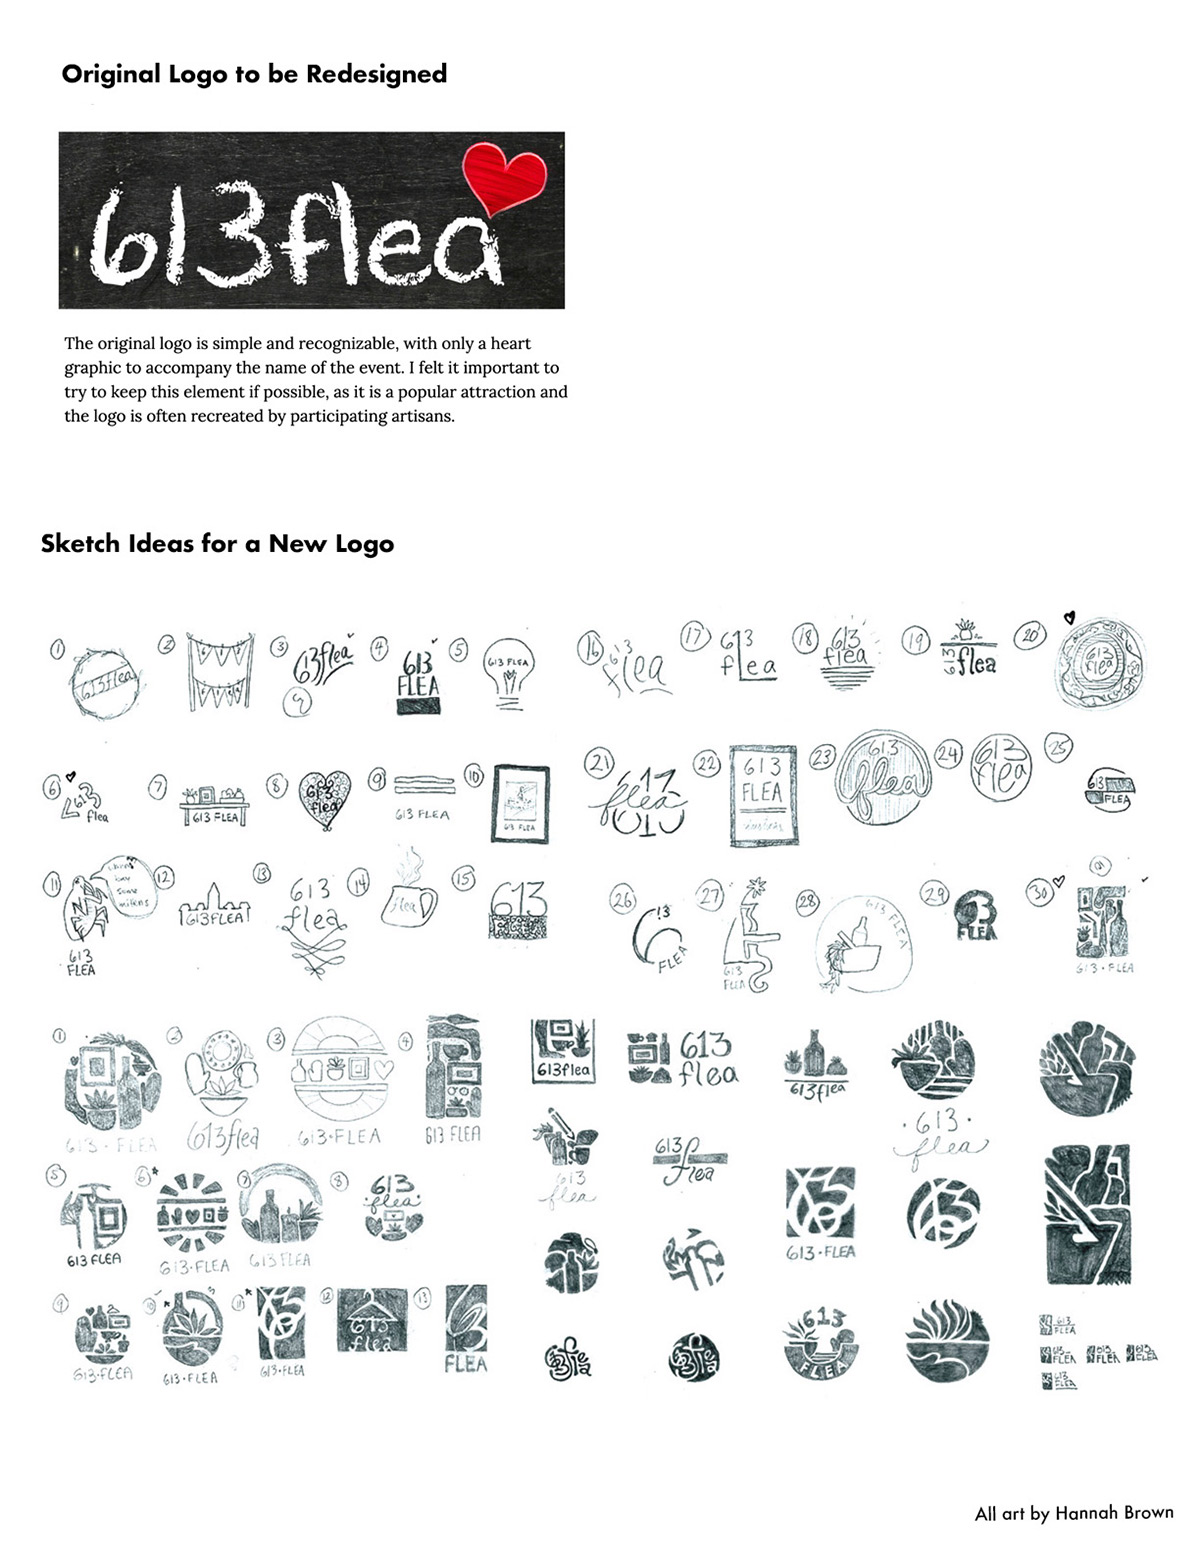 Original logo and sketch ideas for new 613flea logo design